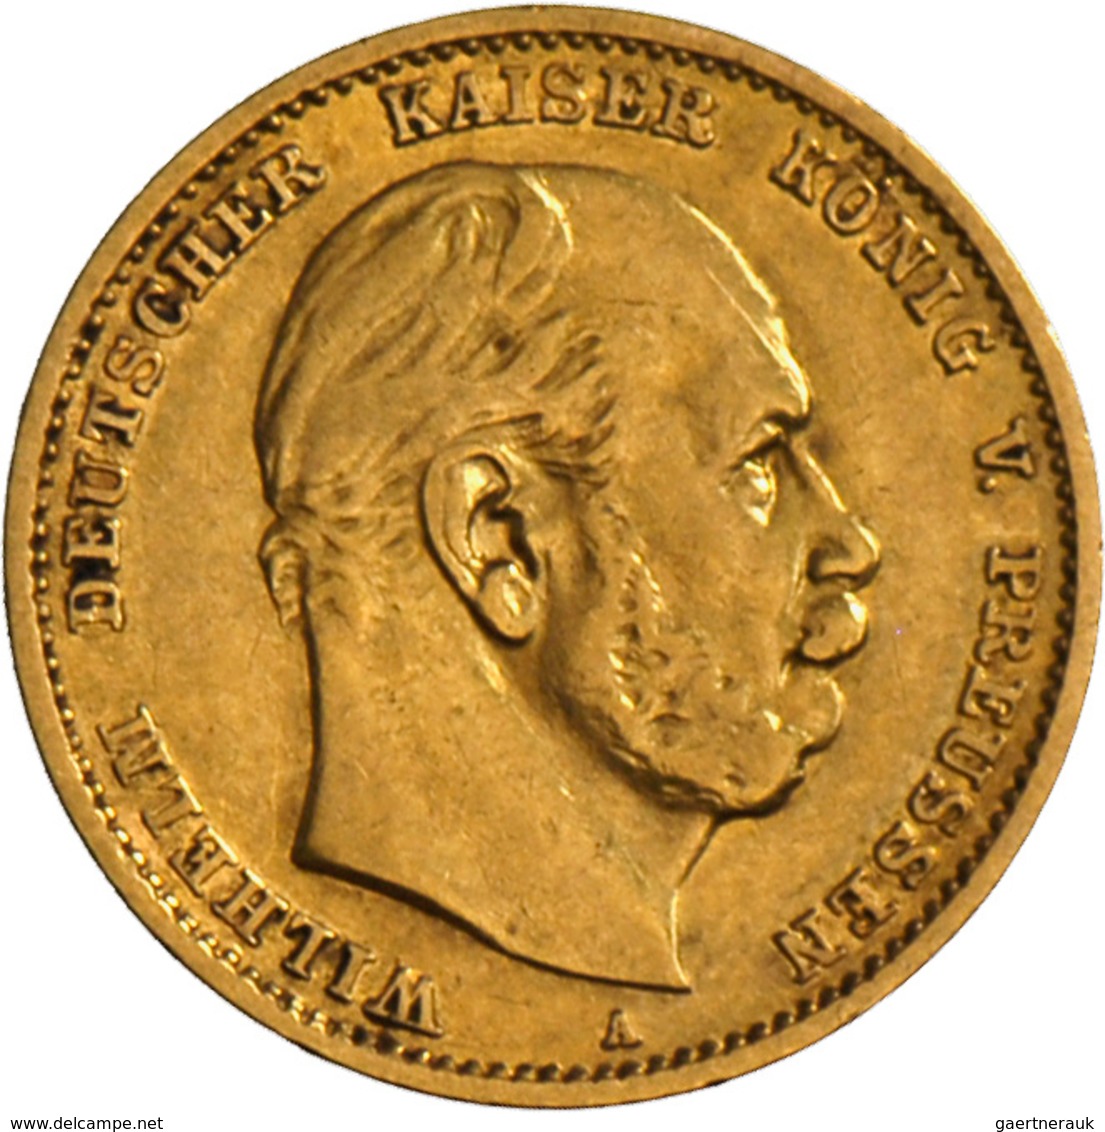 Preußen: Wilhelm I. 1861-1888: 10 Mark 1878 A, Jaeger 245, 3,92 G, 900/1000 Gold, Sehr Schön. - Monedas En Oro